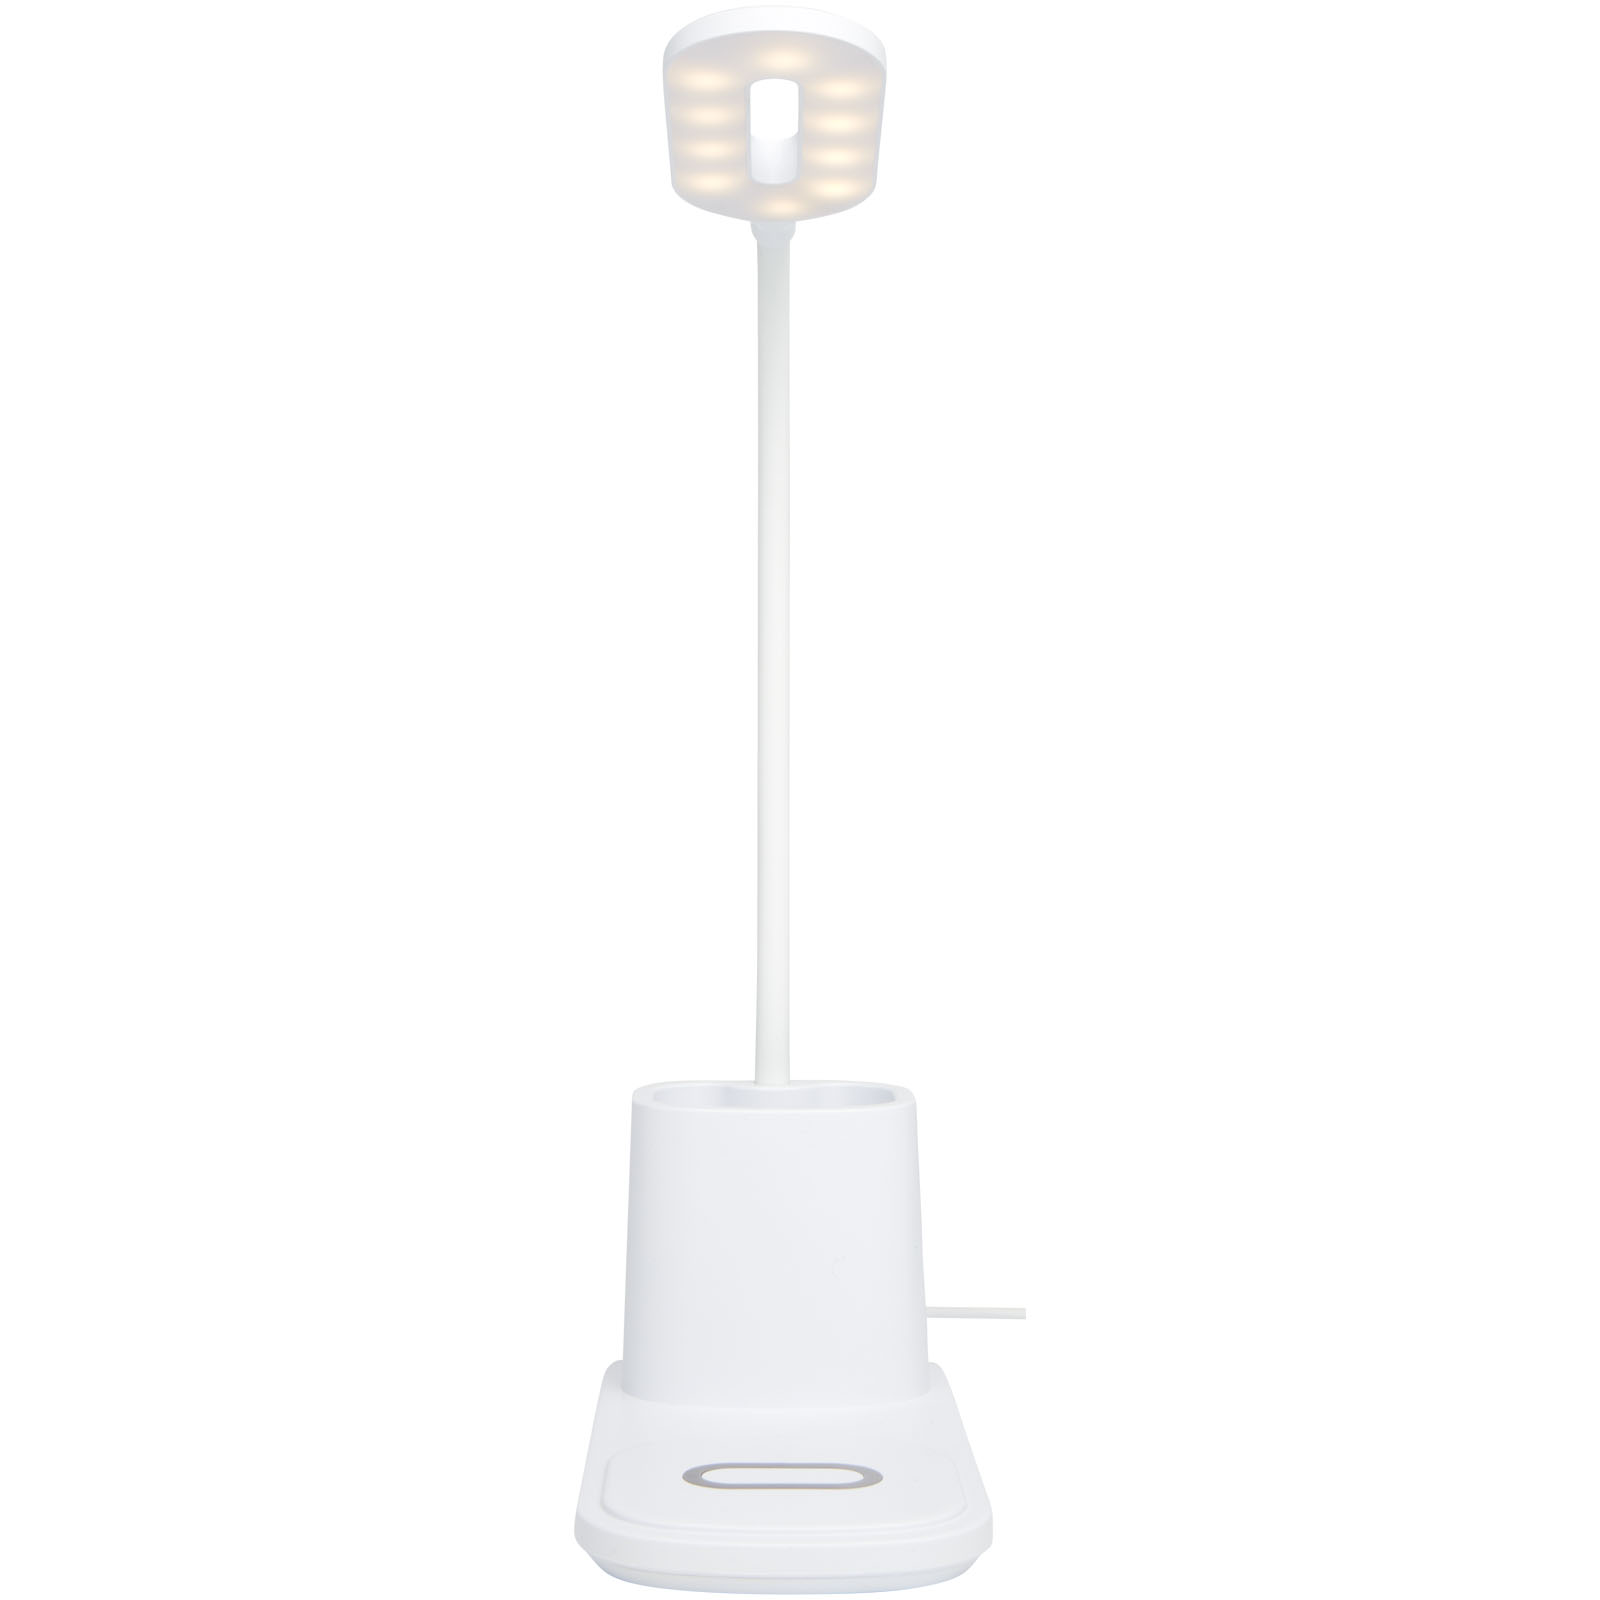 Chargeurs sans fil publicitaires - Lampe de bureau Bright et organiseur avec chargeur à induction - 2